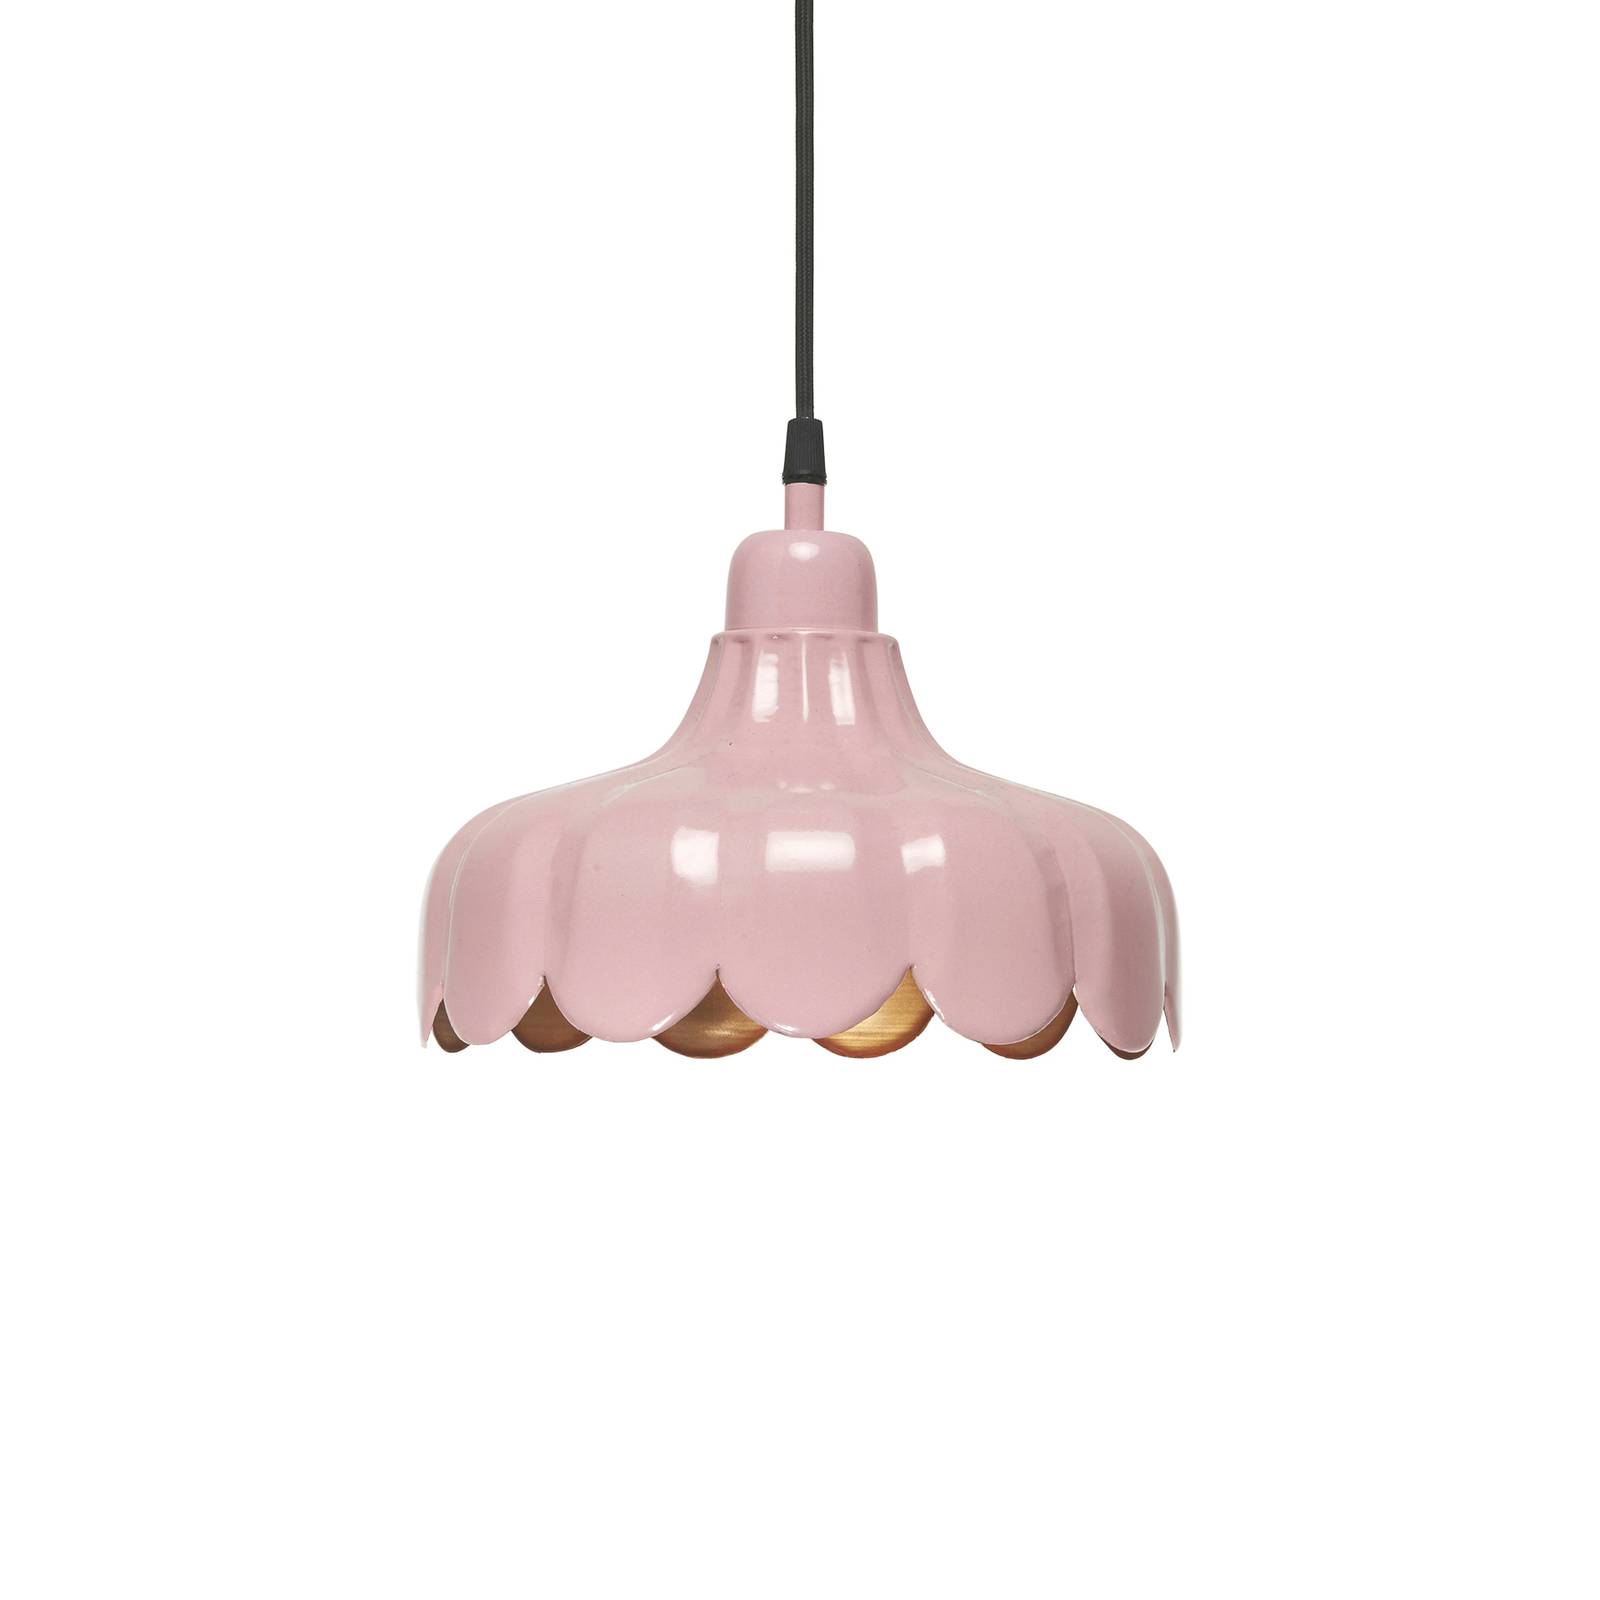 PR Home hängande lampa Wells Small, rosa/guld, Ø 24 cm, stickpropp